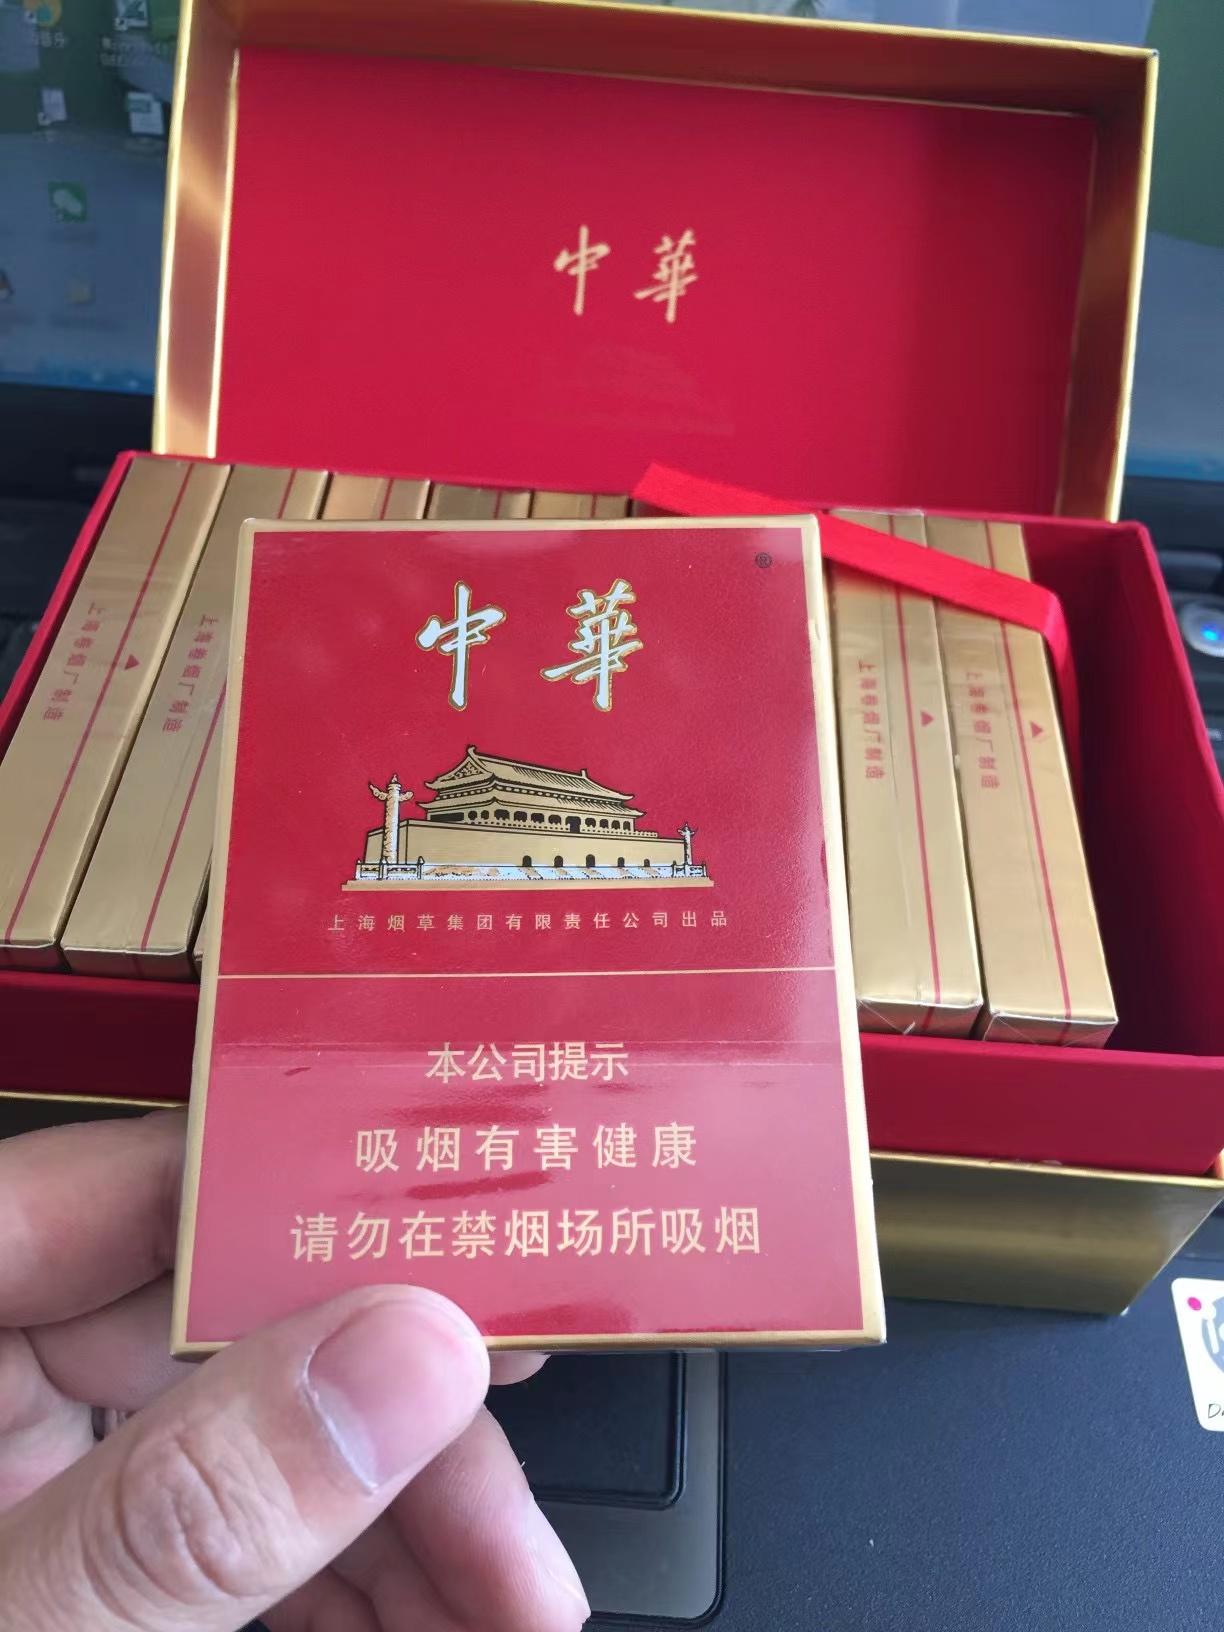 上海香烟红双喜图片